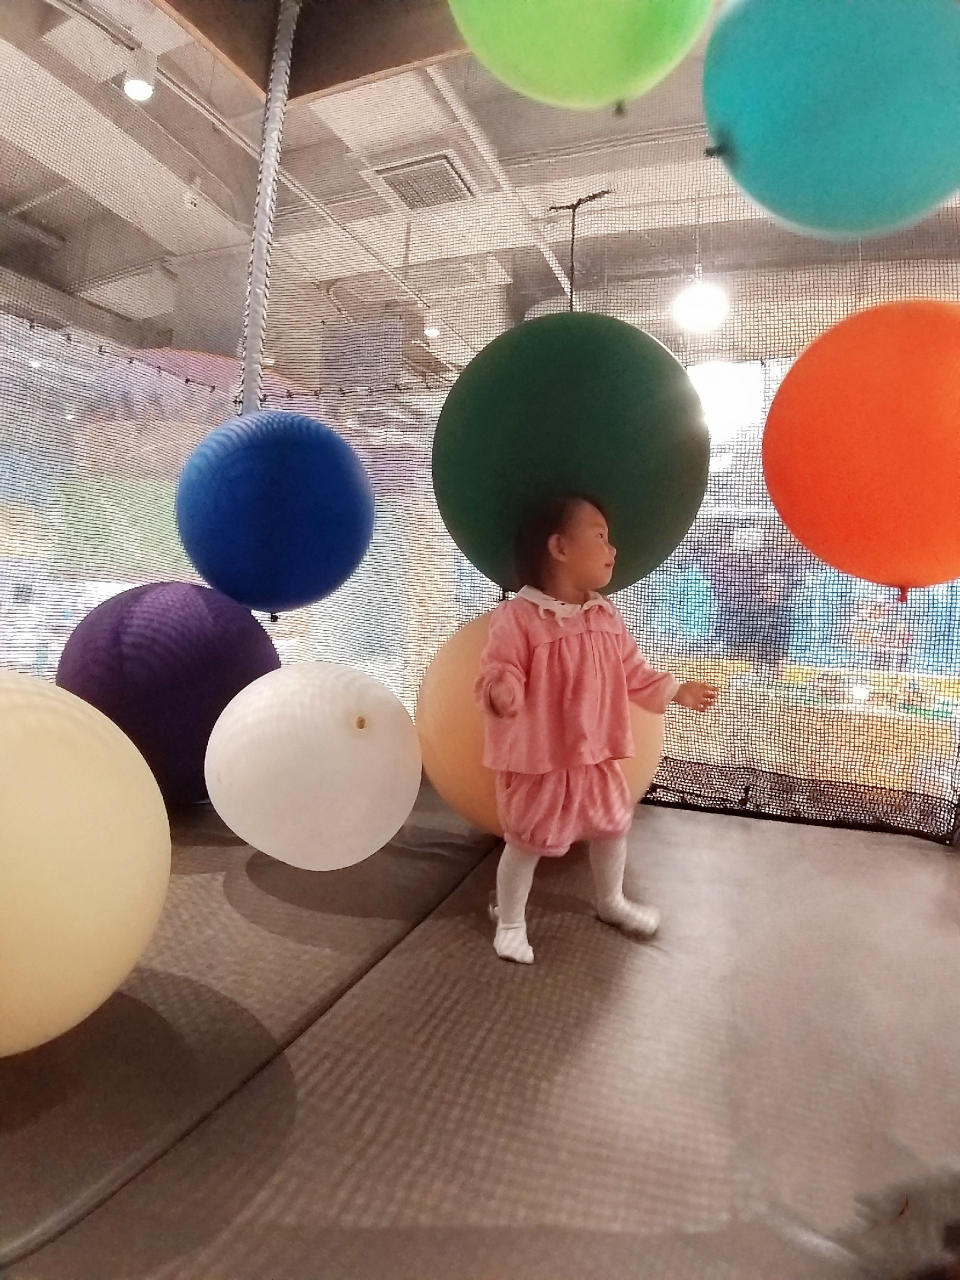 大風吹氣球 體積頗大的氣球，被人氣流吹至在空中盤旋，小朋友可跳起拍打，或用雙臂將氣球抓緊，玩法任你決定。